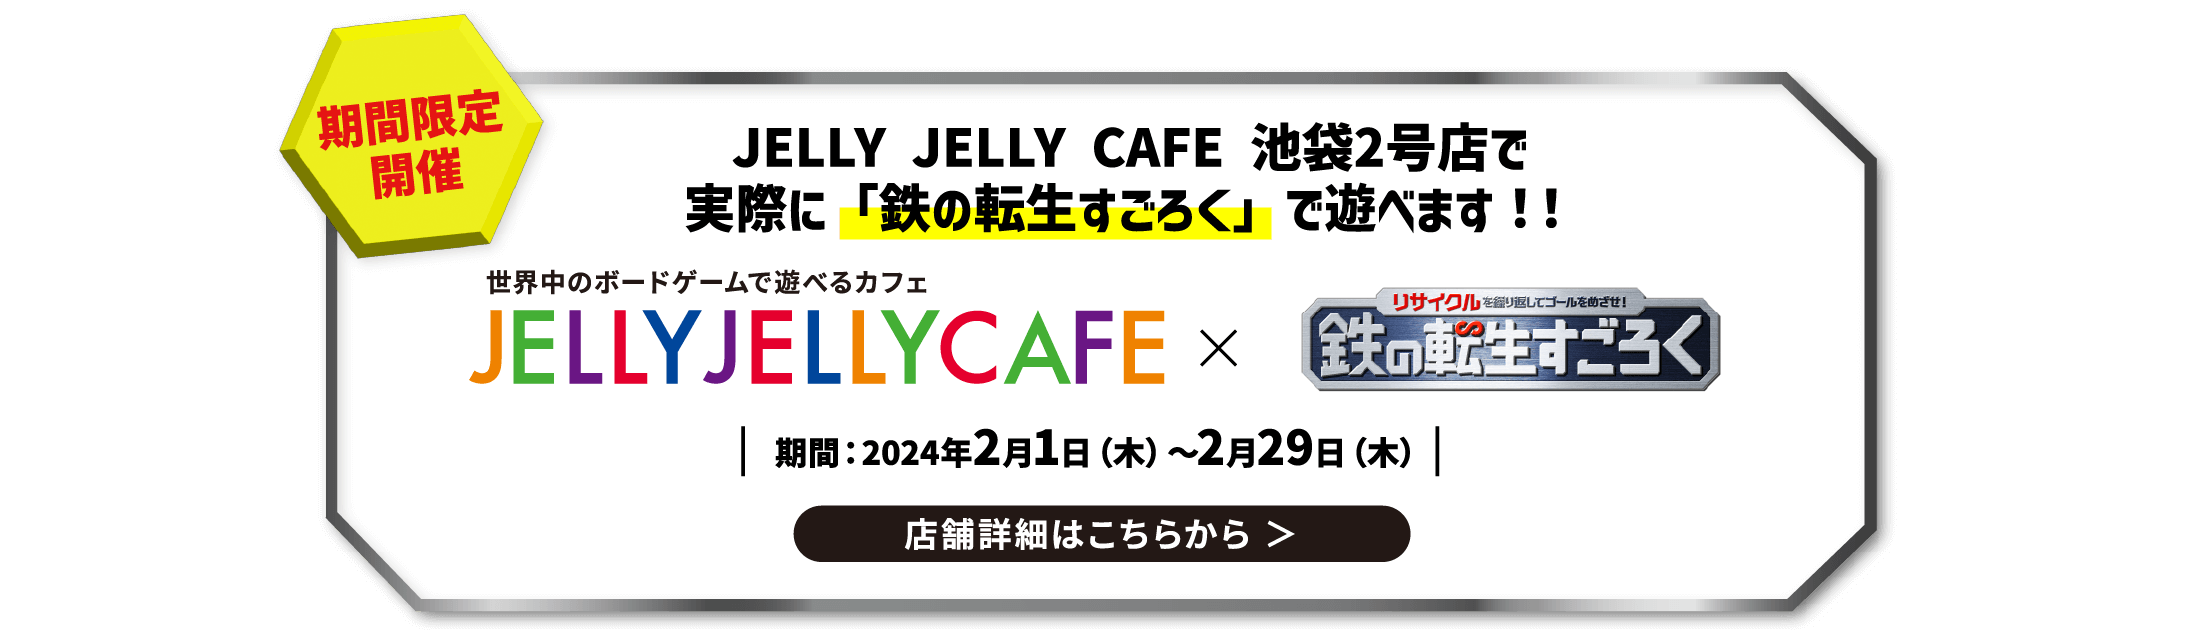 JELLY JELLY CAFE 池袋2号店で実際に「鉄の転生すごろく」で遊べます！！店舗詳細はこちらから